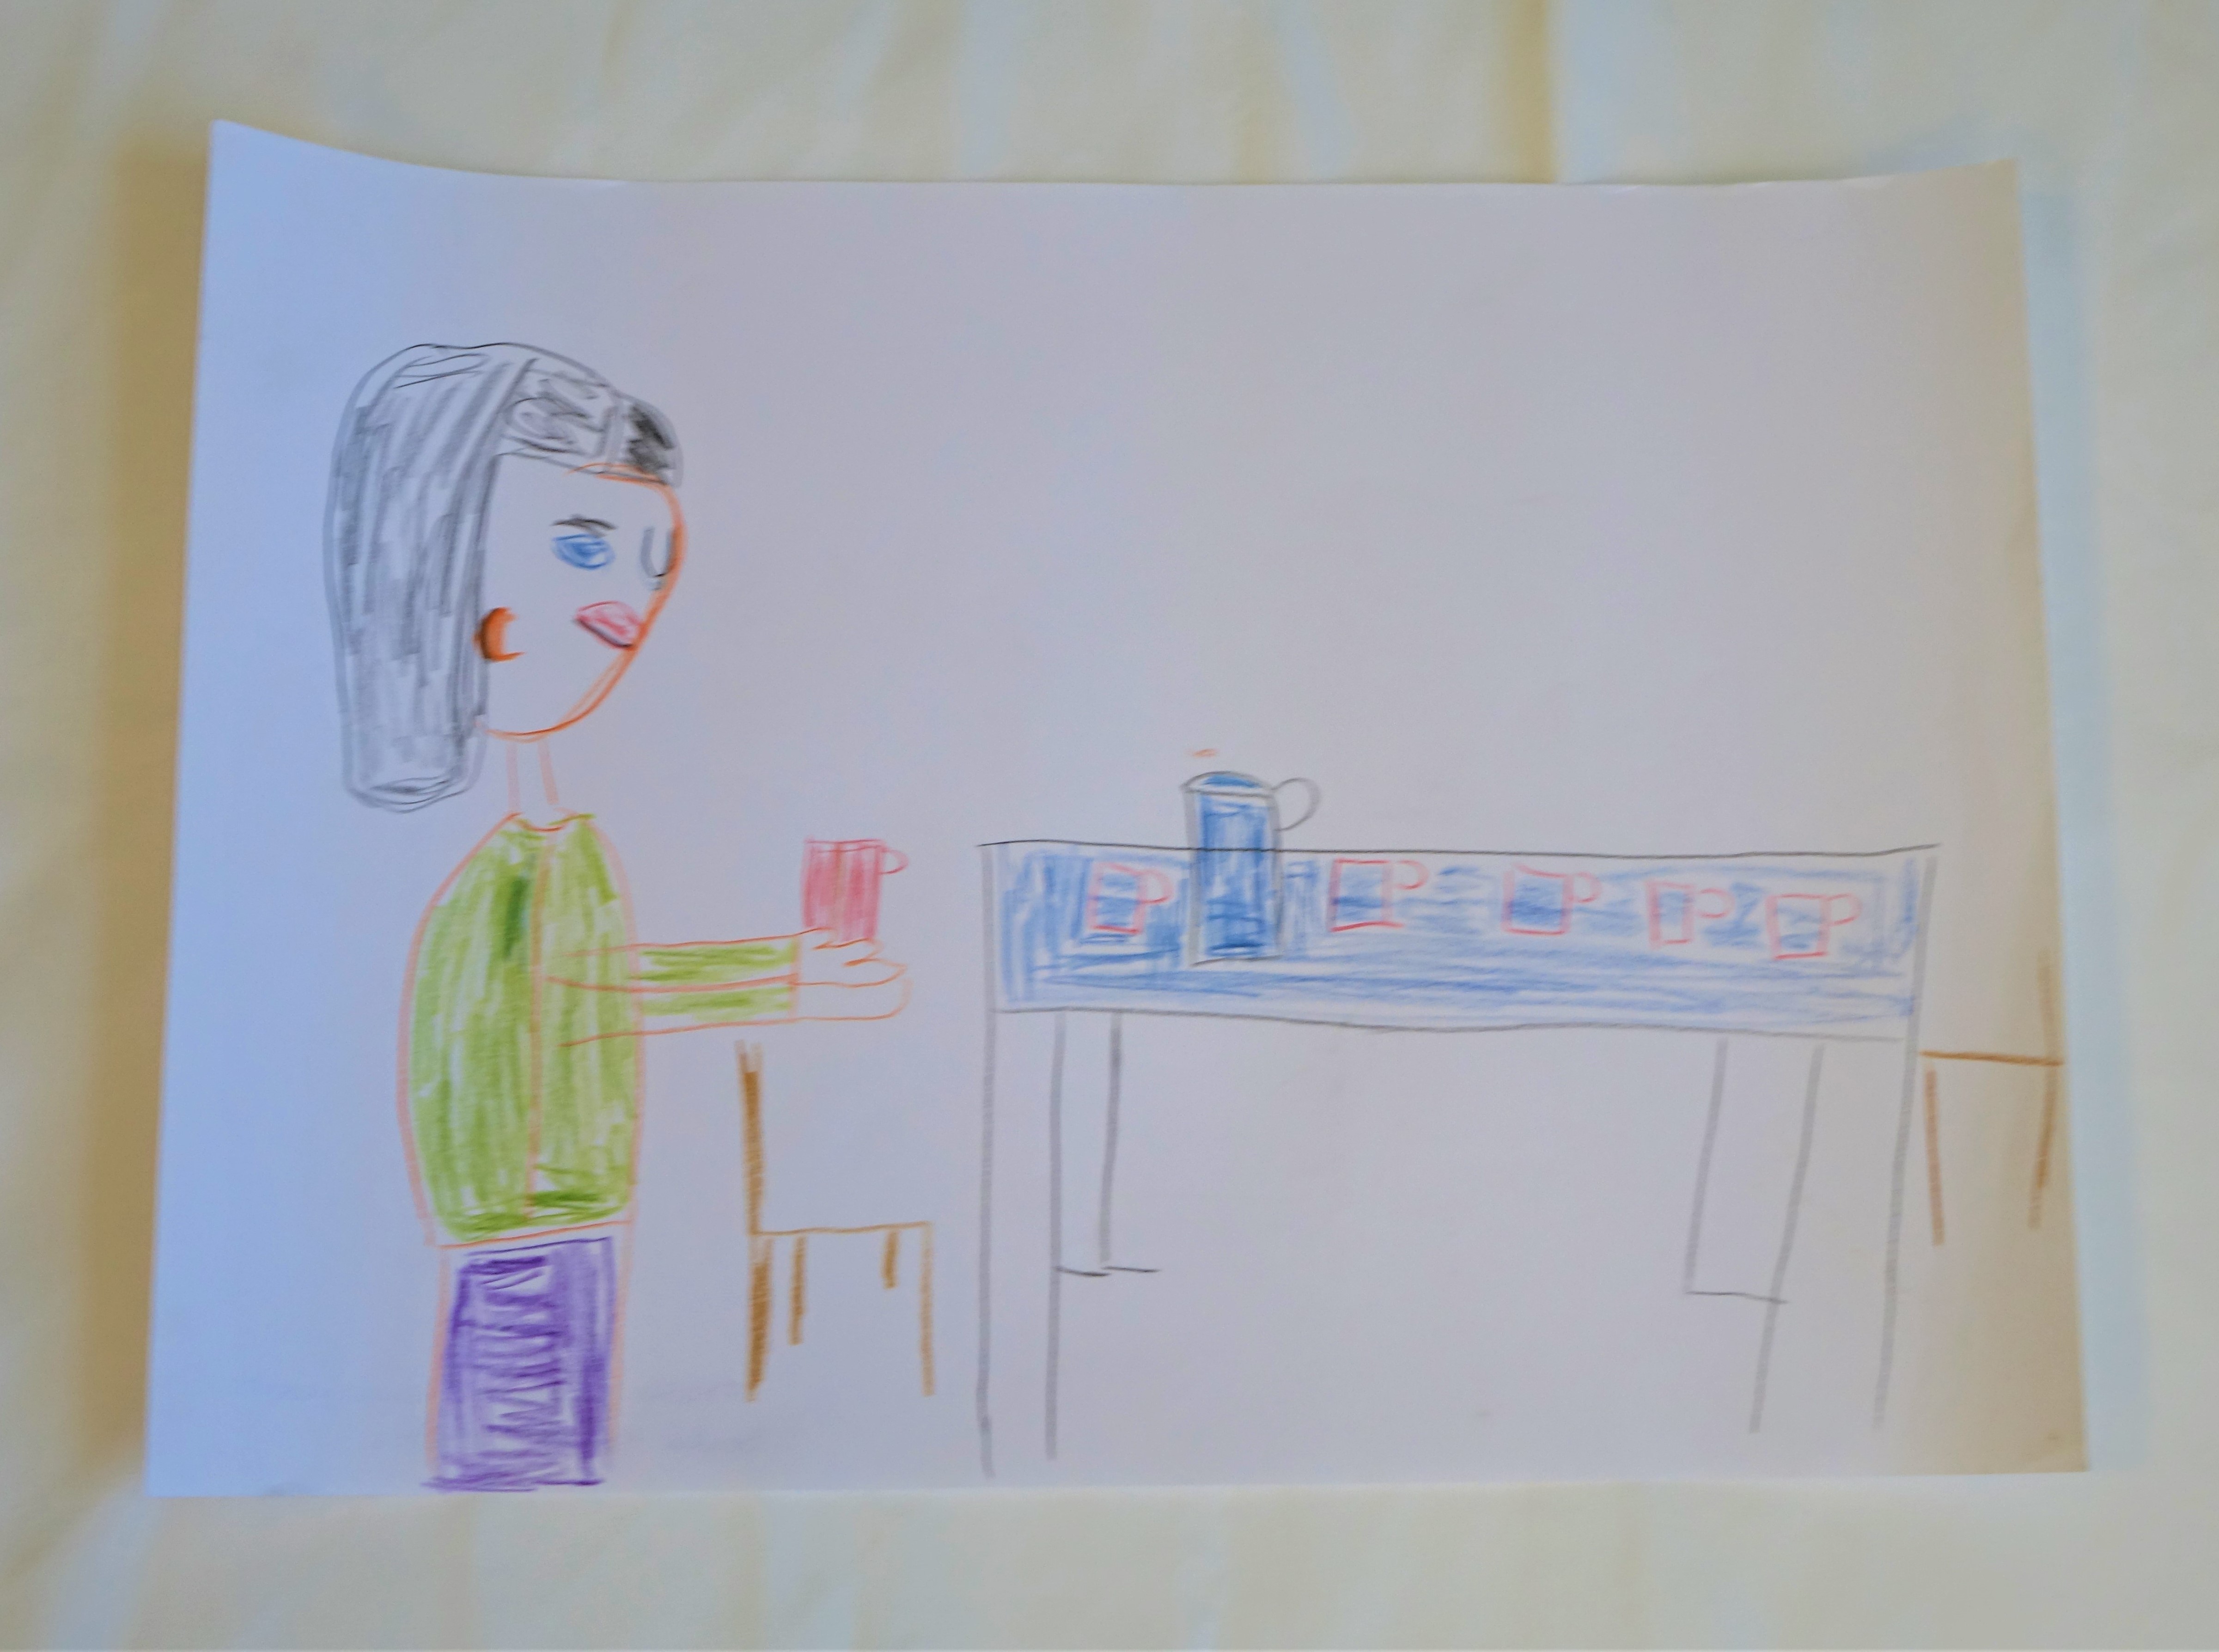 A4 méretű színes rajz. A kép bal oldalán áll Árpád. Haja hosszú fekete, szeme kék. Zöld pulóvert és lila nadrágot visel, kezében egy piros bögre. Előtte egy kék asztal két darab barna székkel. Az asztalon egy kancsó és öt darab pohár.